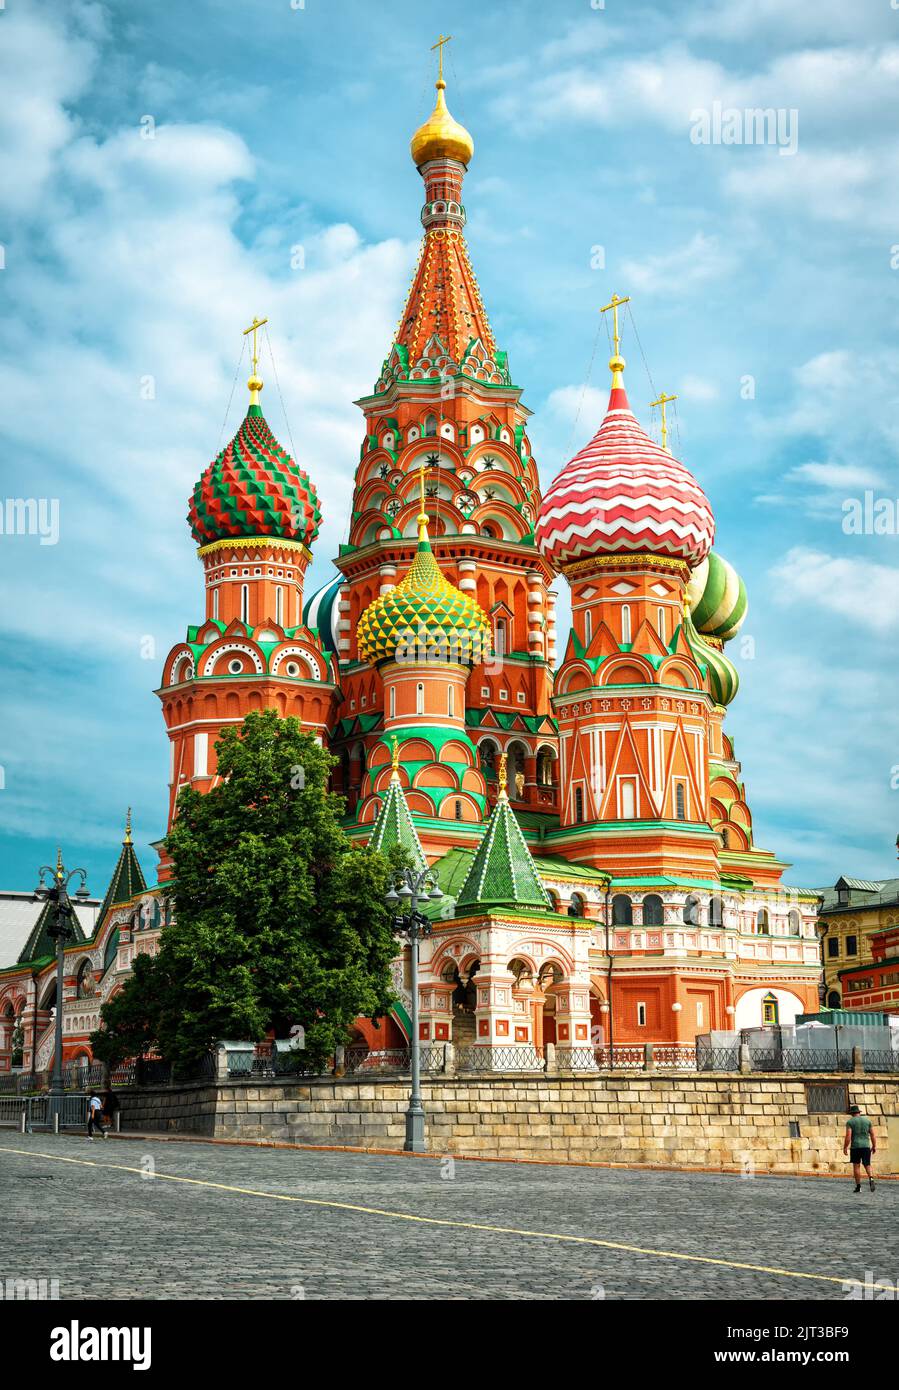 Cattedrale di San Basilio a Mosca, Russia. E' un famoso punto di riferimento della Russia. Bel monumento, vecchia chiesa ortodossa russa contro il cielo nella città di Mosca ce Foto Stock